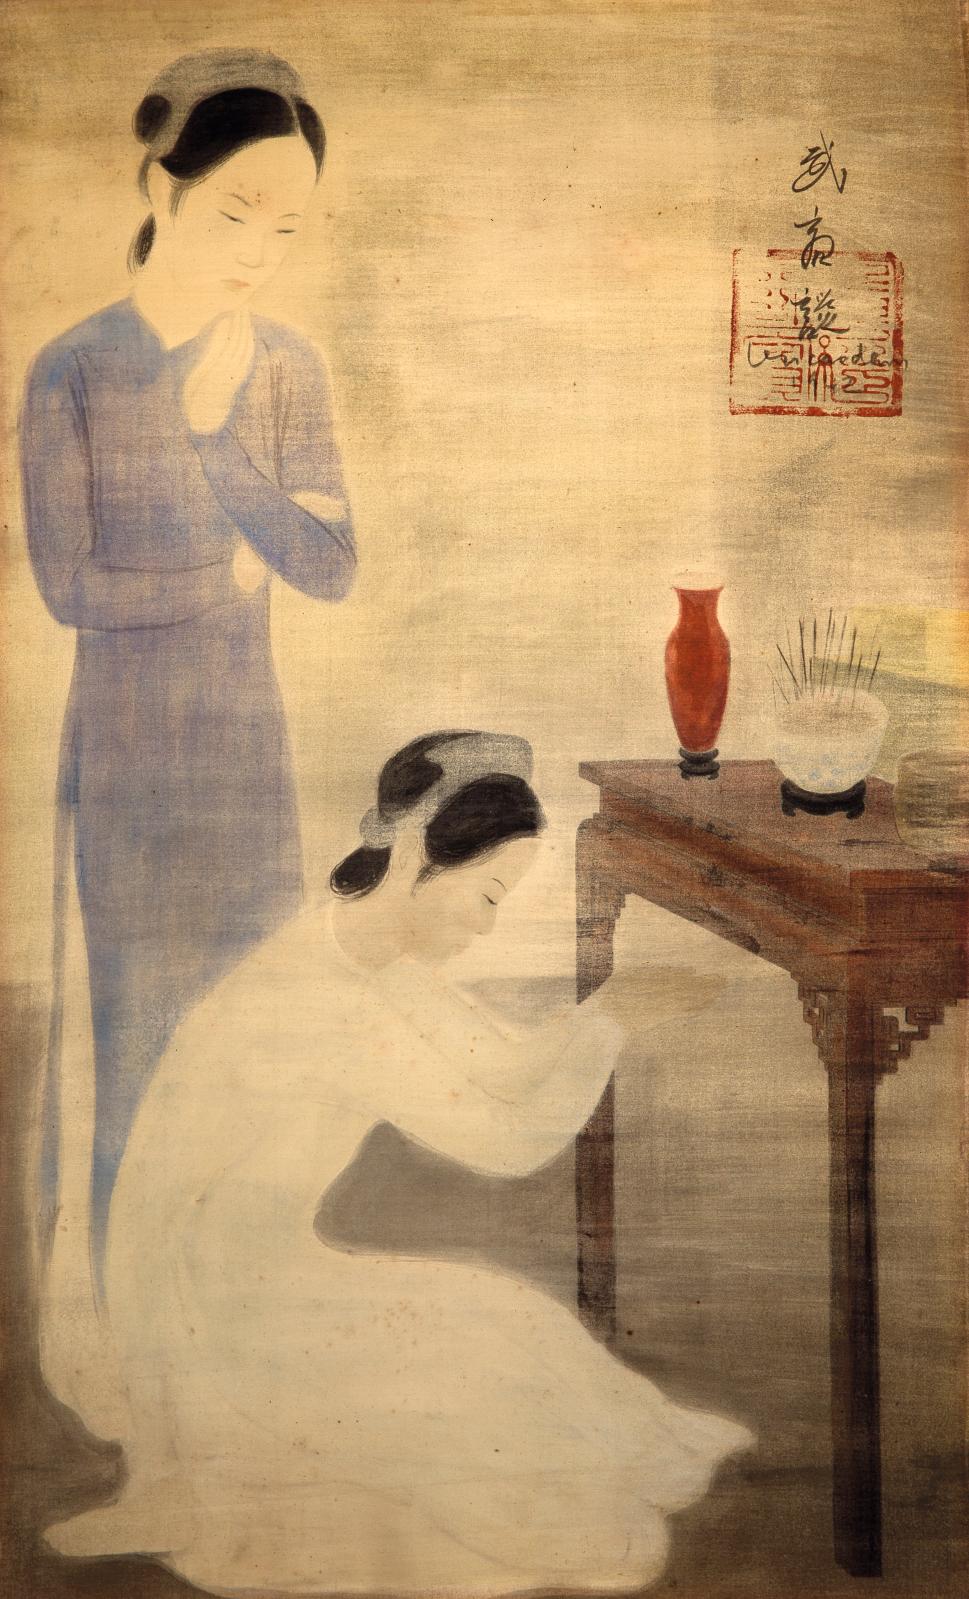 Le lien de piété filiale unissant les générations s’exprime dans cette peinture de Vu Cao Dam (1908-2000), montrant Le Culte des ancêtres 